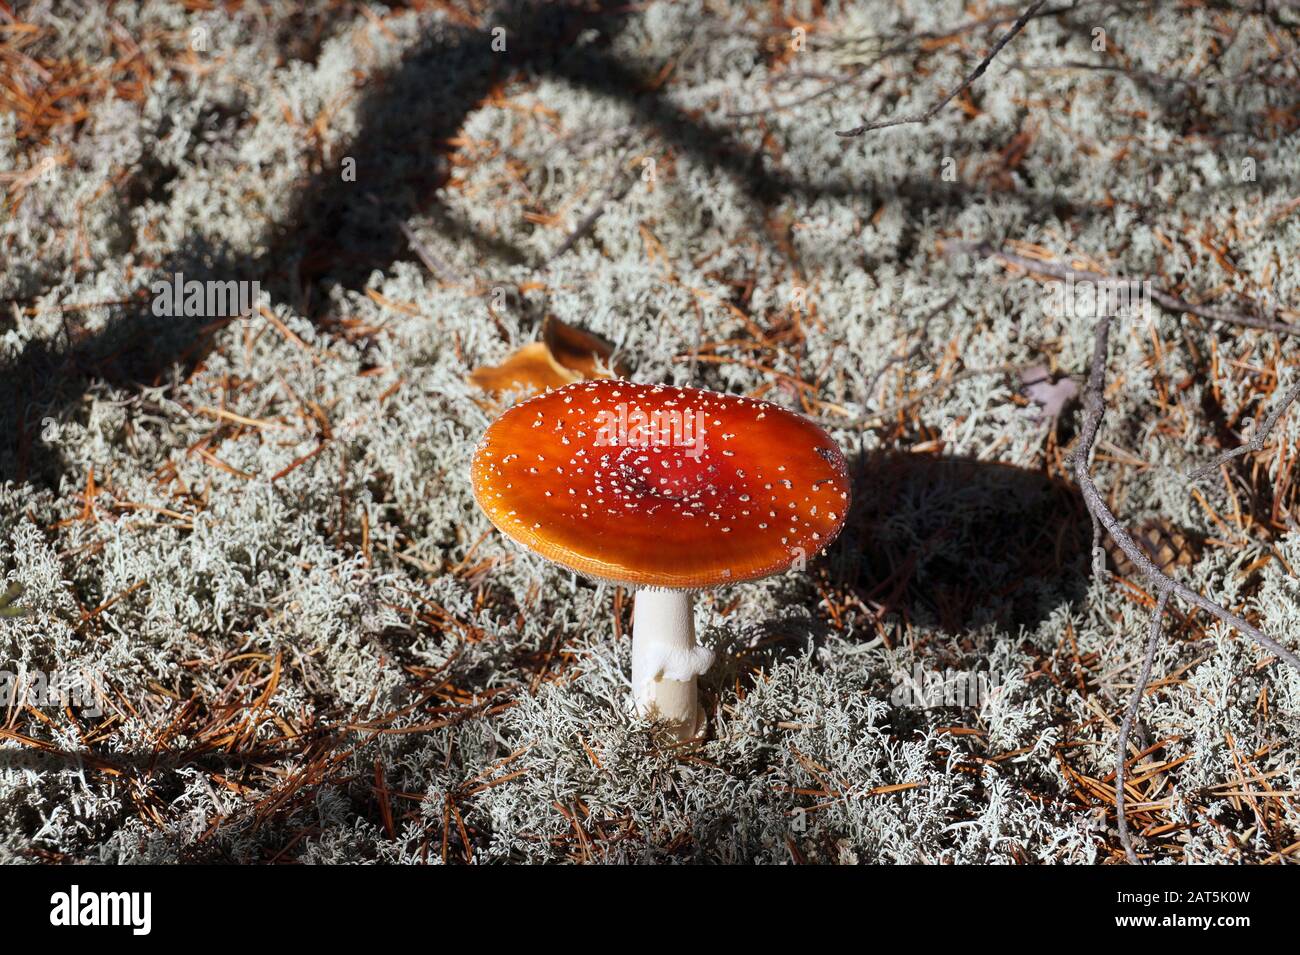 Ein giftiger Pilz, der unter anderem Muskarin enthält. Roter Toadhocker. Stockfoto